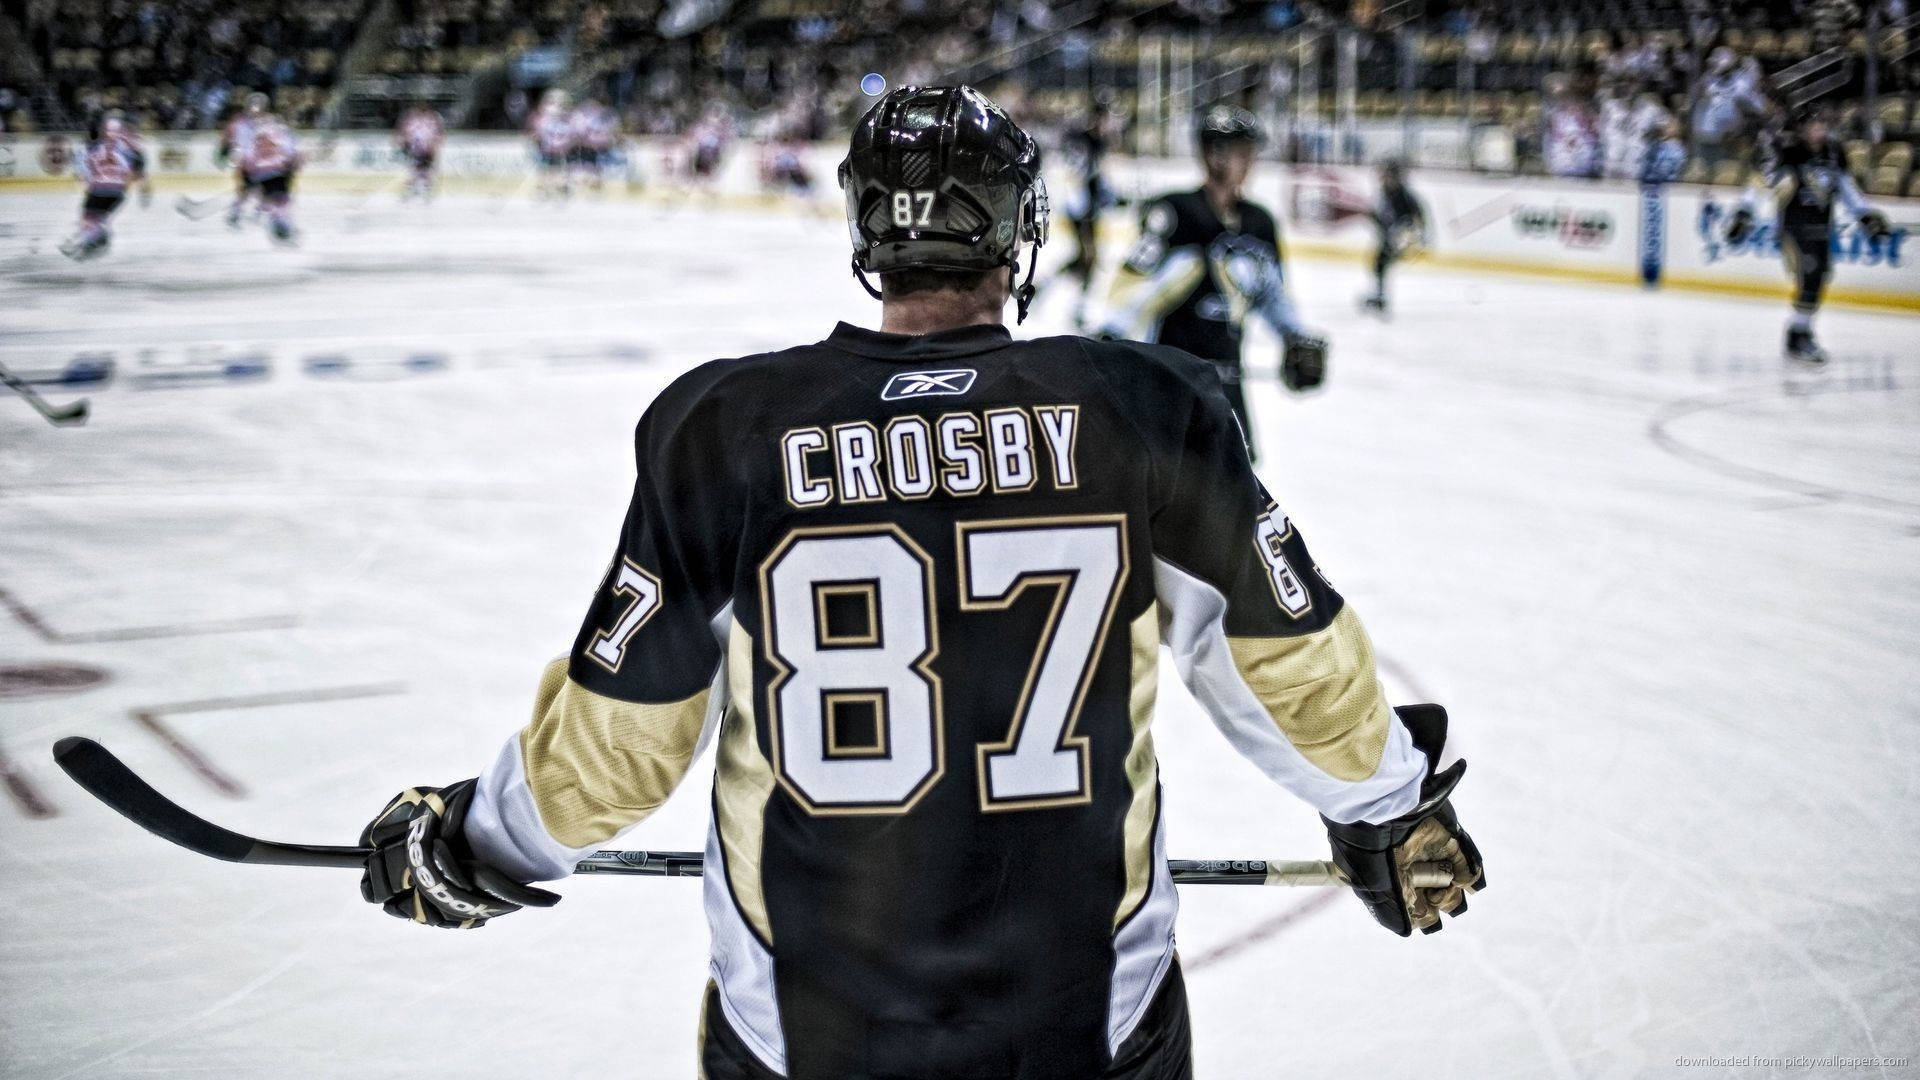 Ishockeyspelarensidney Crosby Från Pittsburgh Penguins. Wallpaper